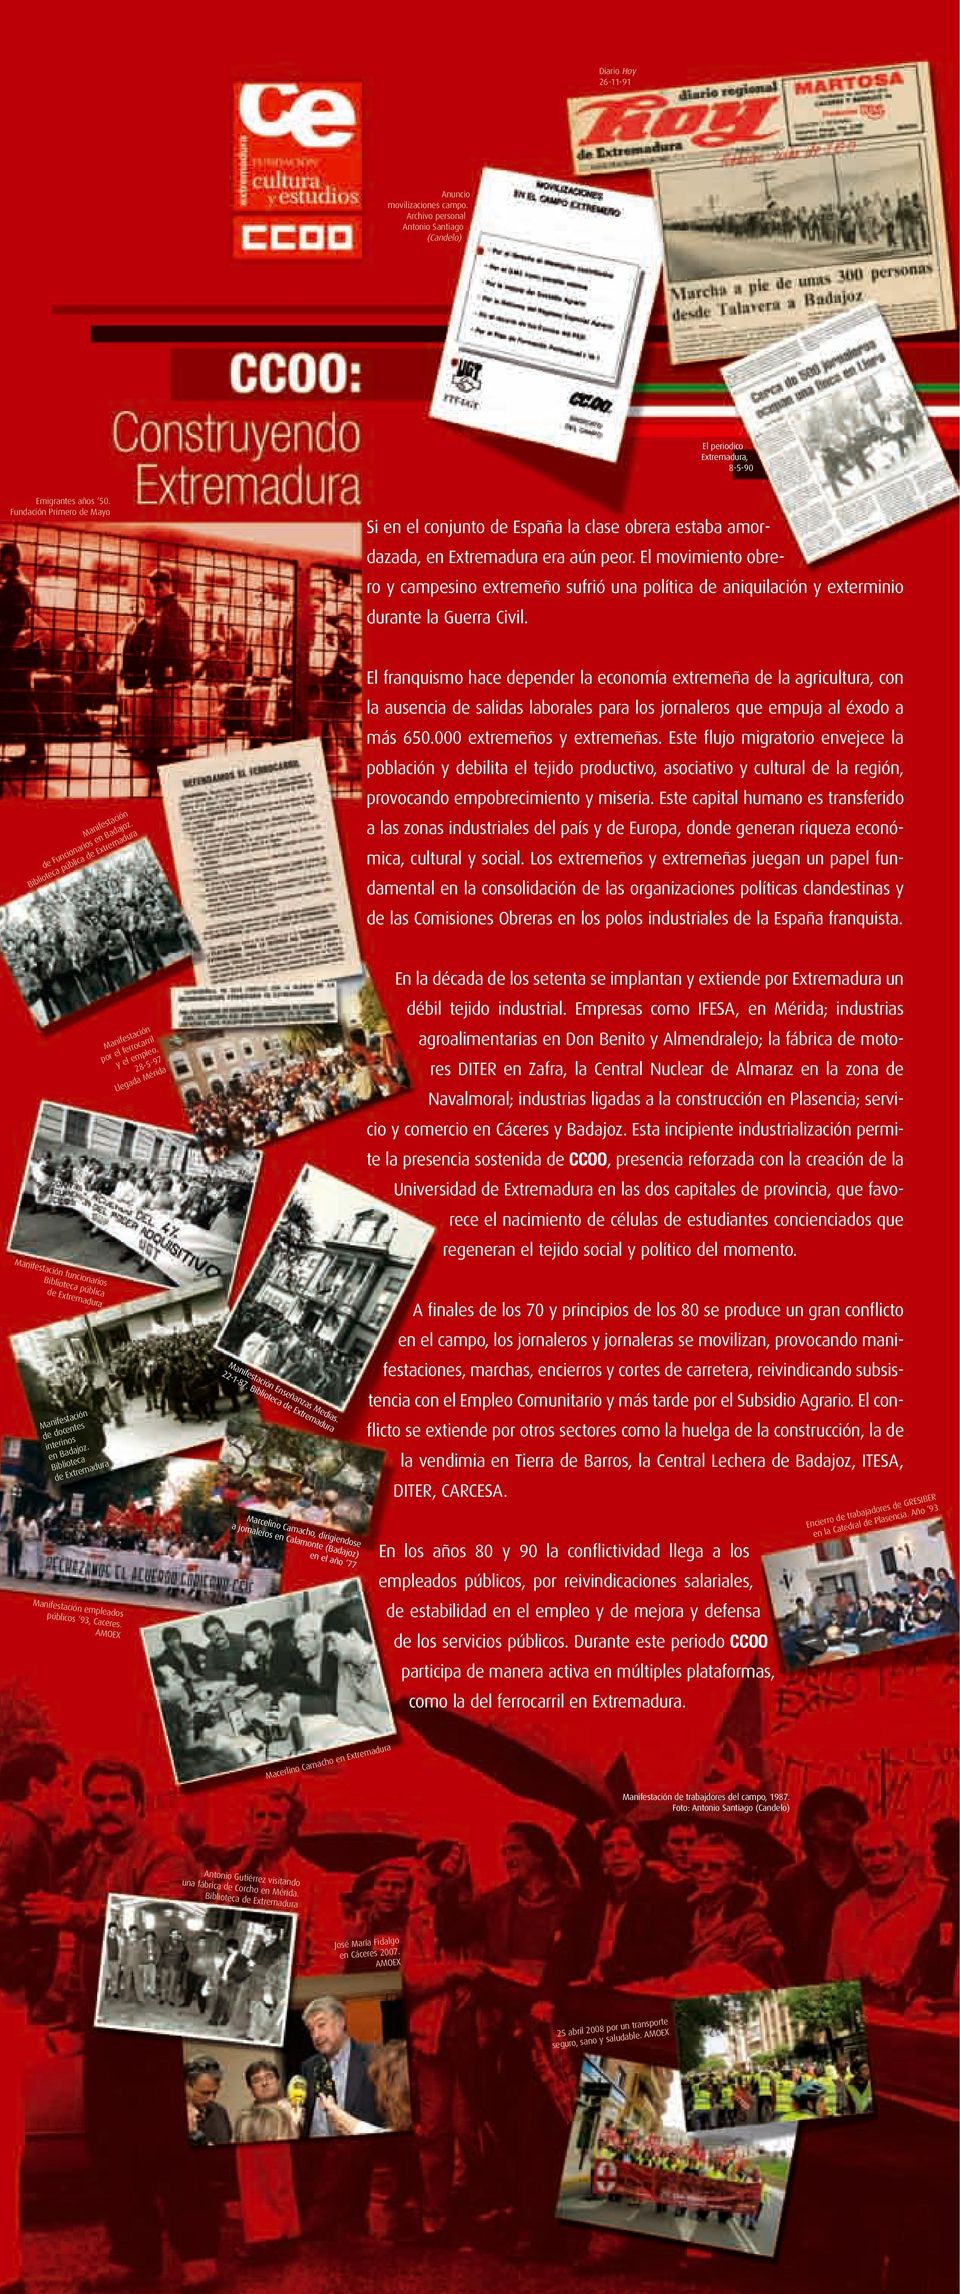 El movimiento obrero y campesino extremeño sufrió una política de aniquilación y exterminio durante la Guerra Civil. Manifestación de Funcionarios en Badajoz.